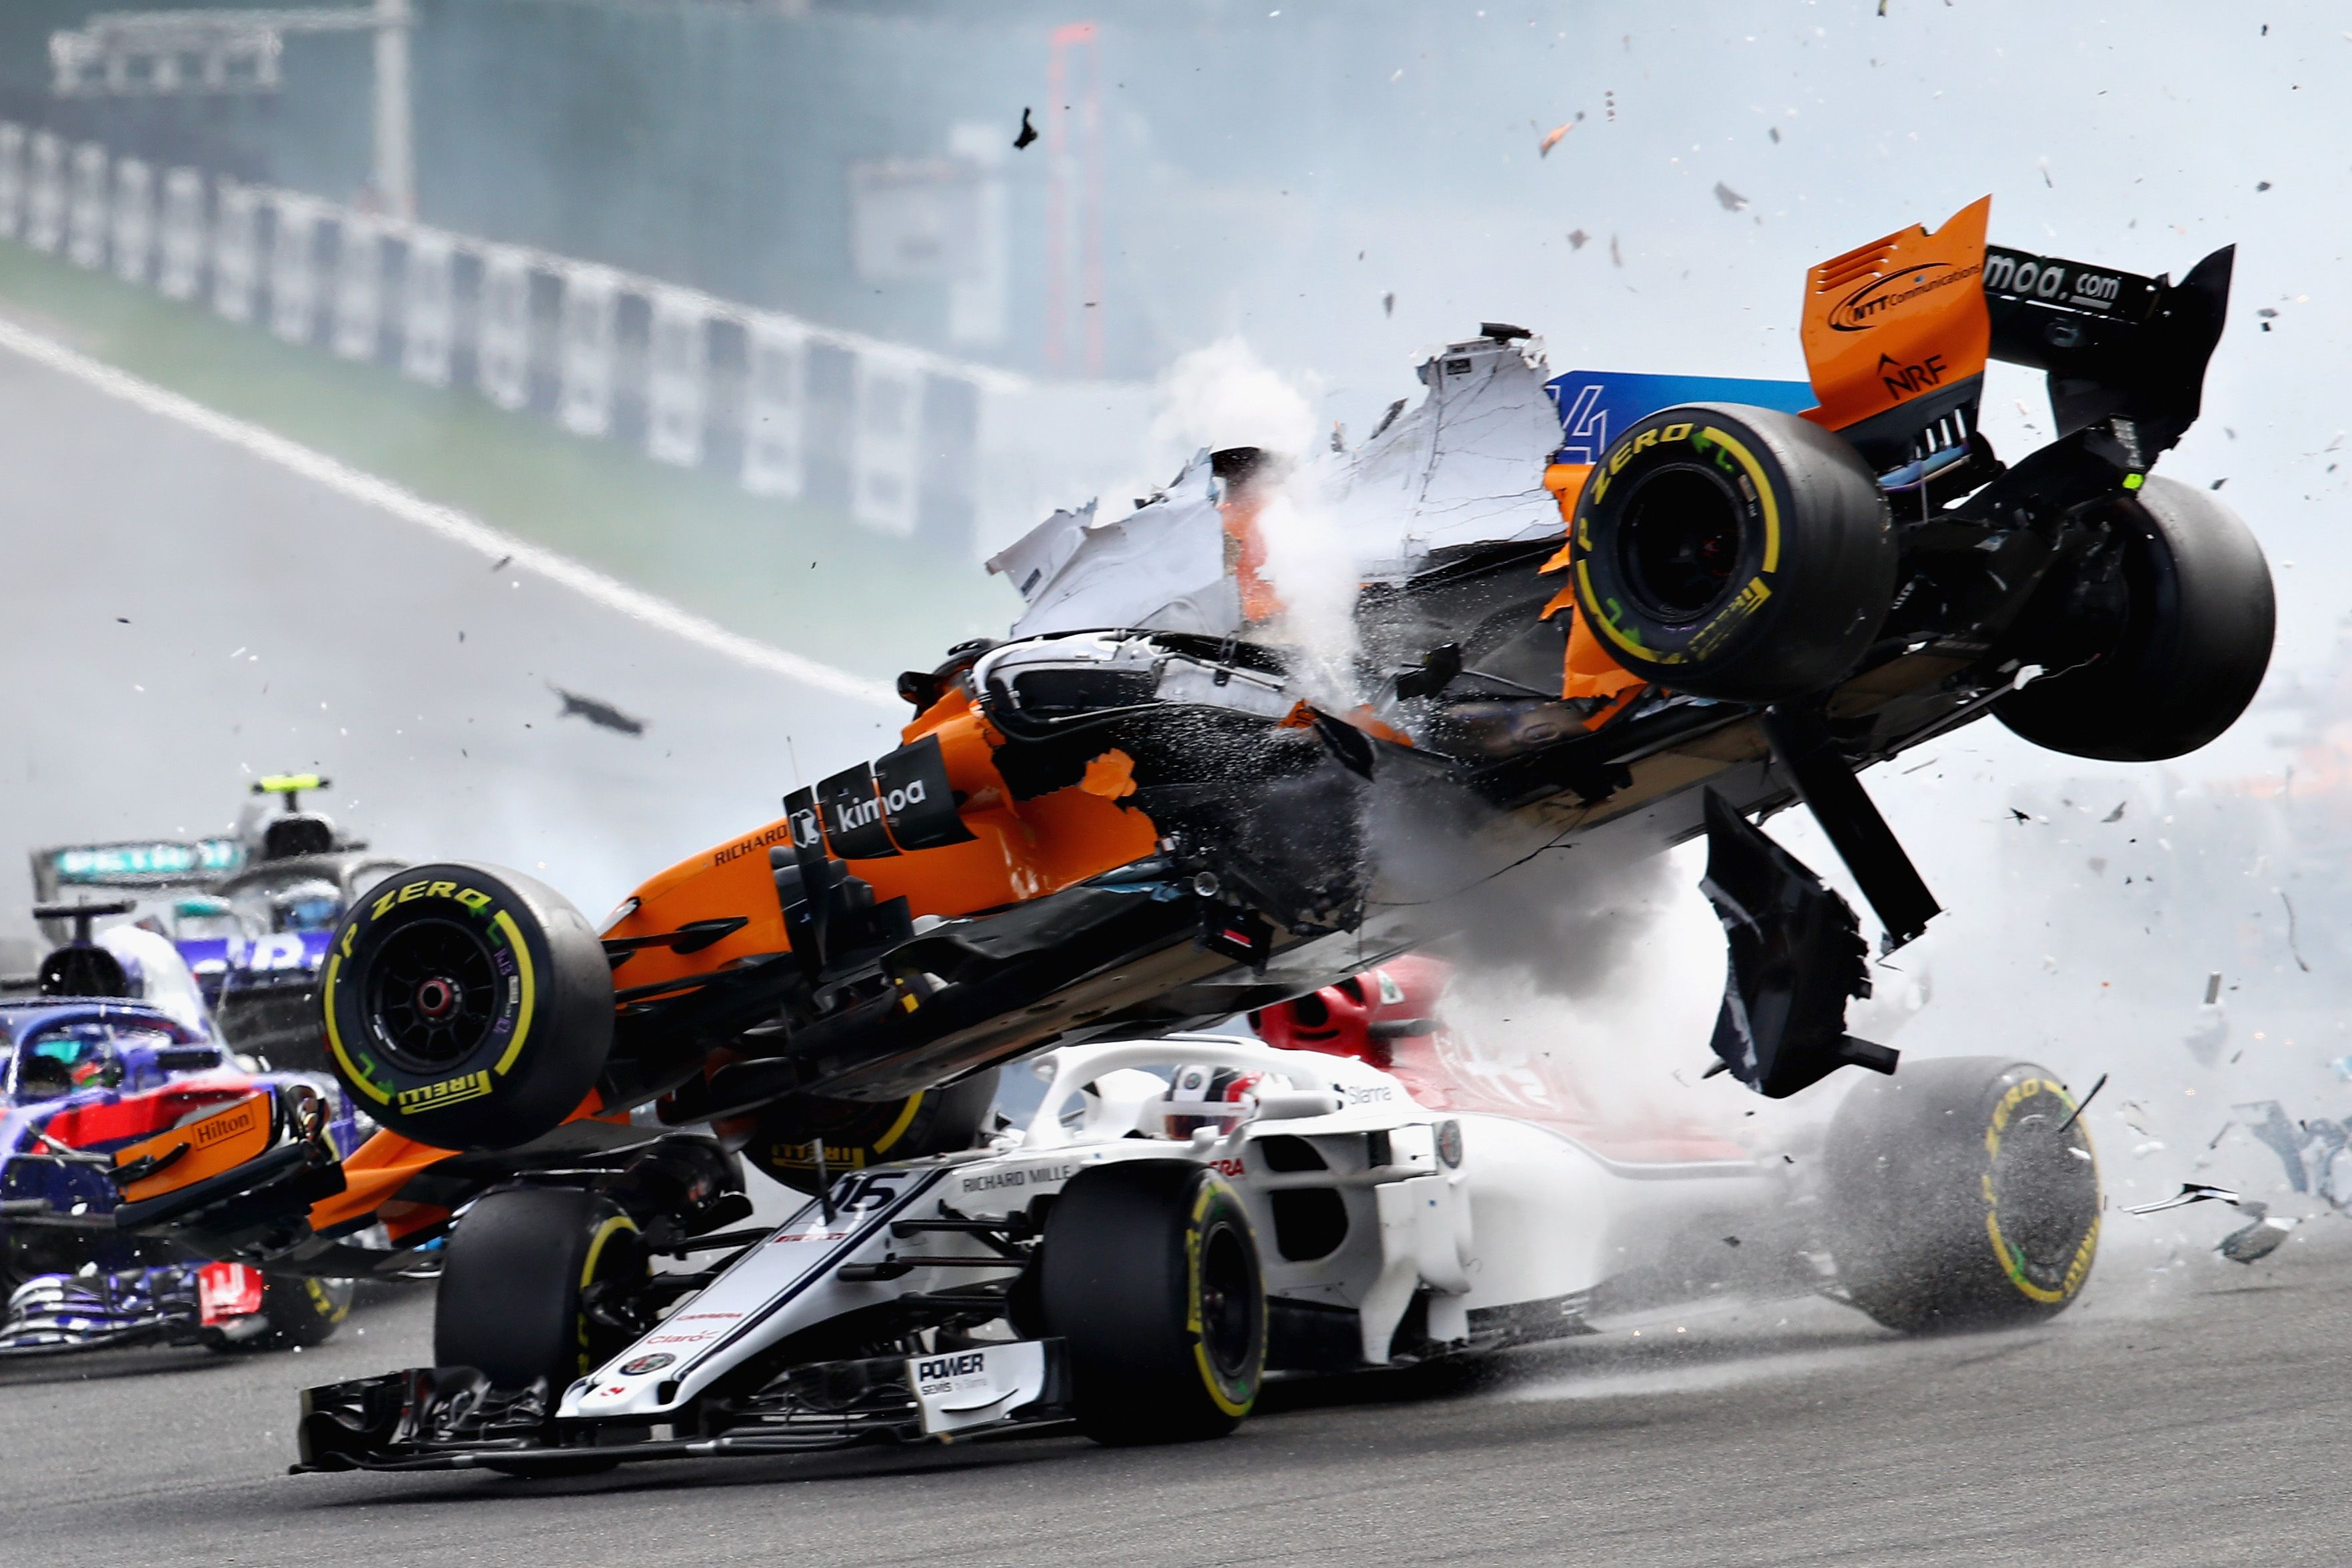 30 054 photos et images de F1 Car - Getty Images